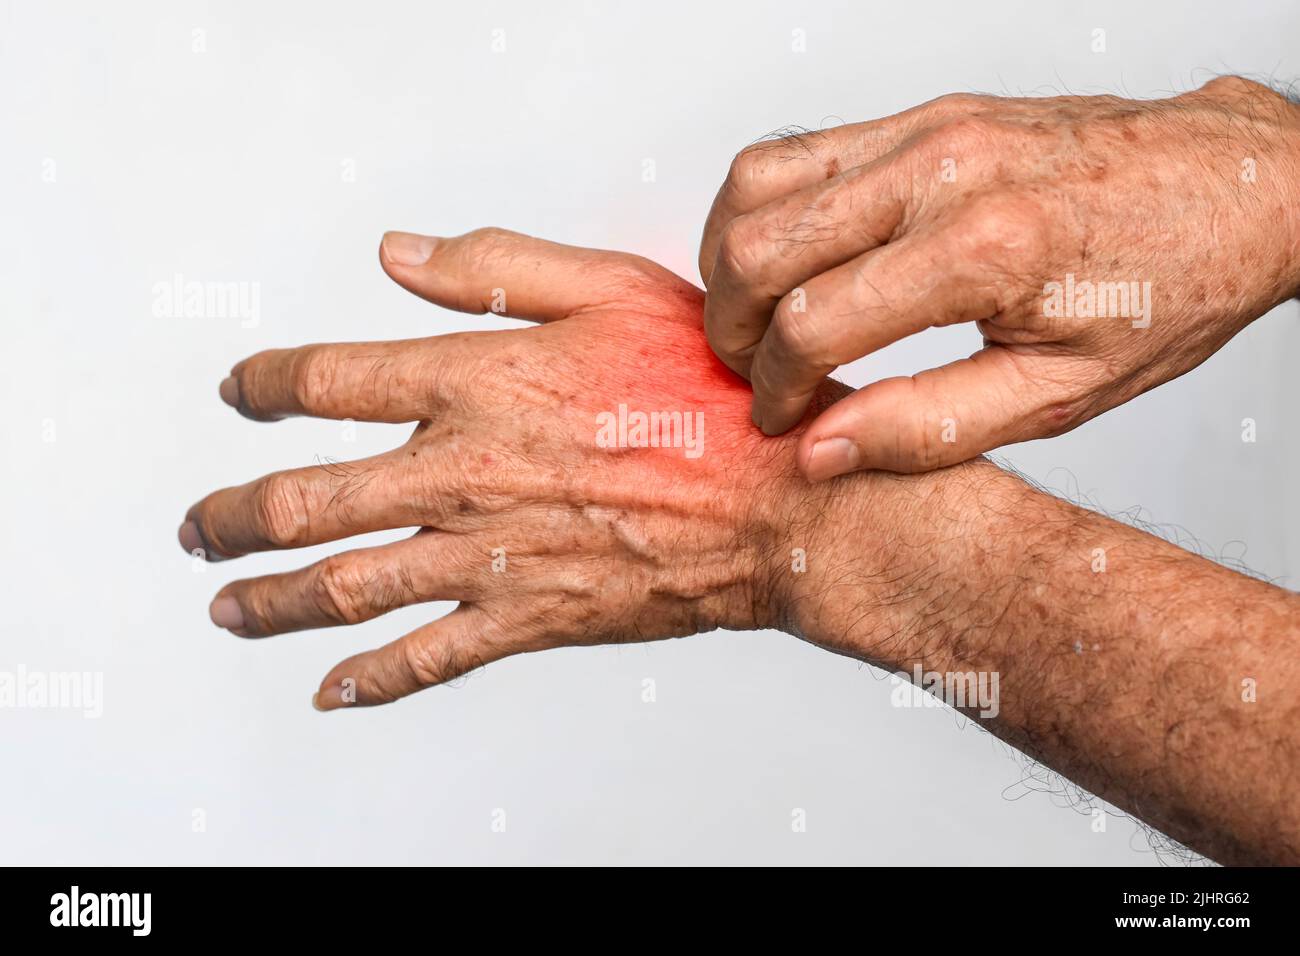 Homme asiatique aîné se grattant la main. Concept de maladies de la peau qui démangent telles que la gale, l'infection fongique, l'eczéma, le psoriasis, l'allergie, etc Banque D'Images